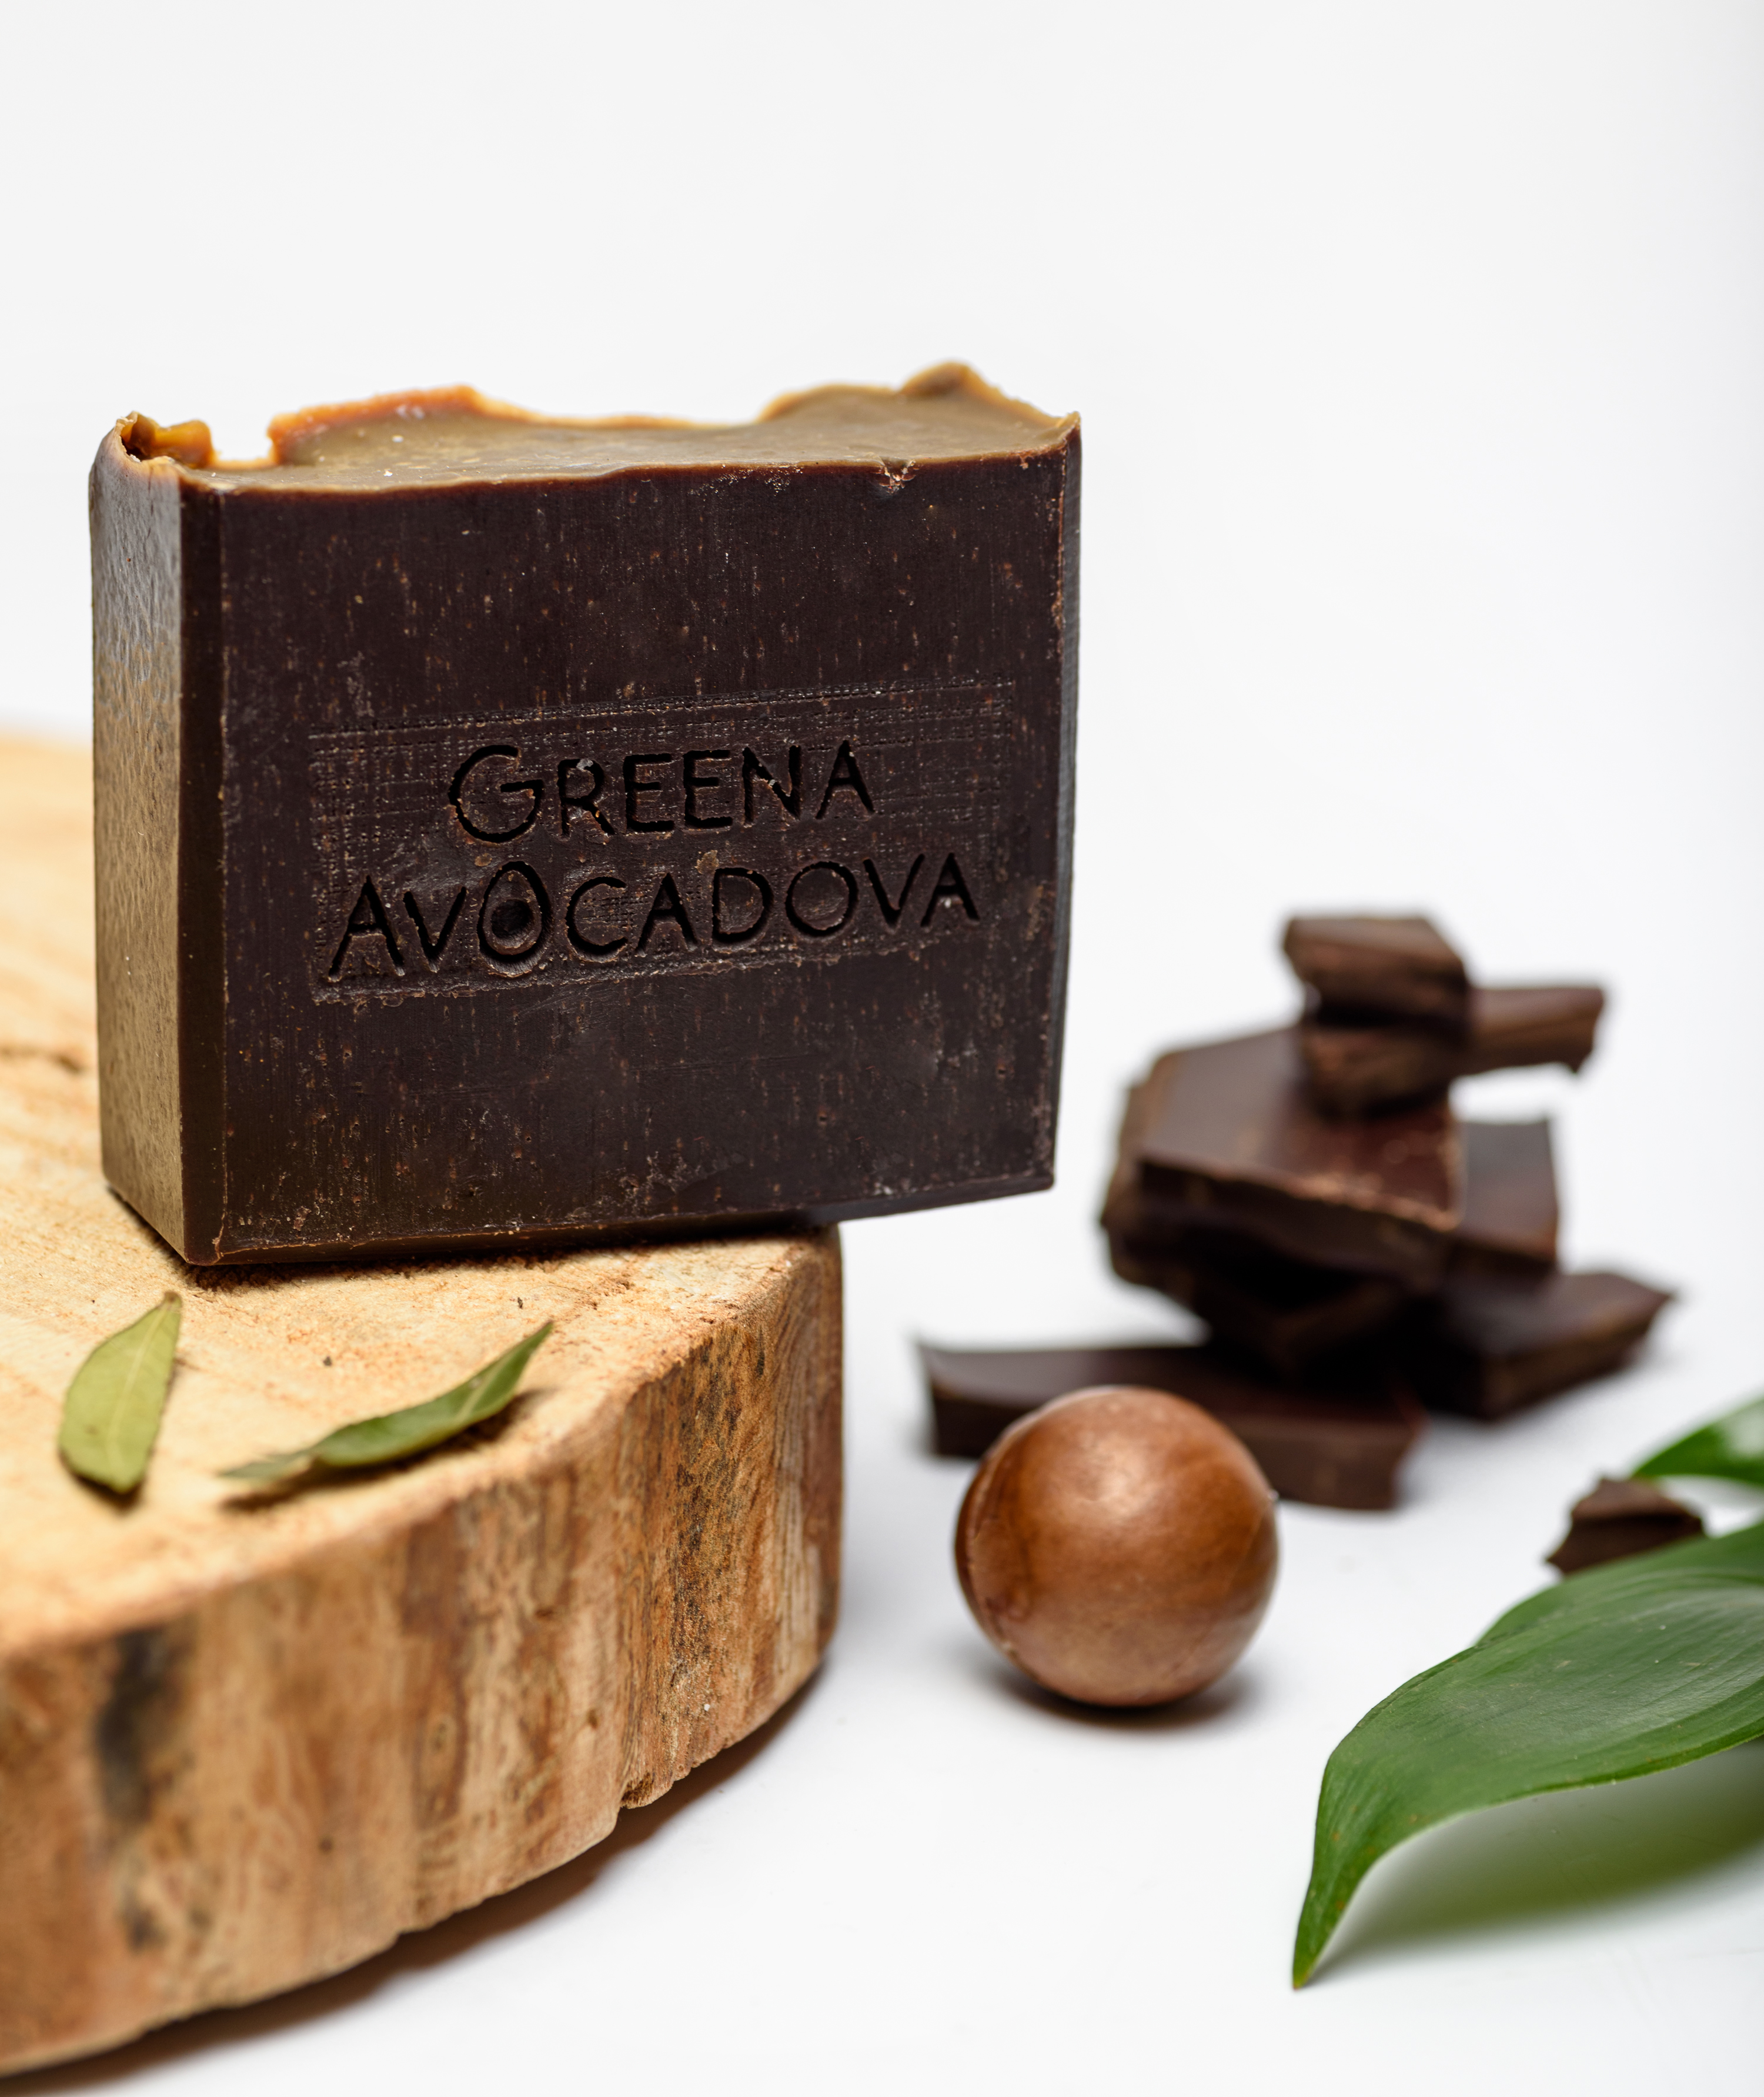 Натурально мыло ручной работы Greena Avocadova шоколад - фото 4